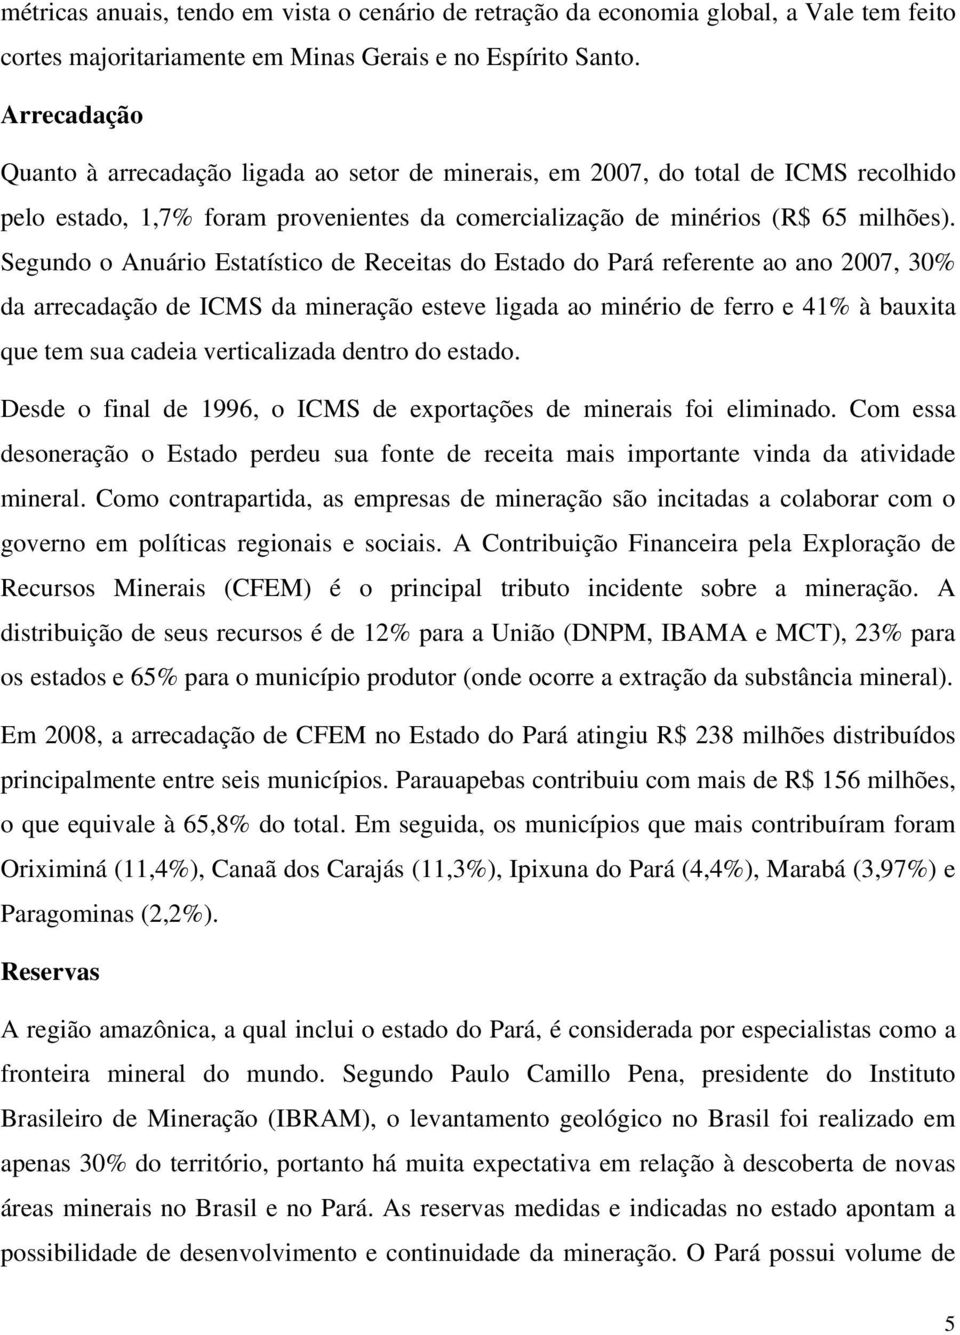 Segundo o Anuário Estatístico de Receitas do Estado do Pará referente ao ano 2007, 30% da arrecadação de ICMS da mineração esteve ligada ao minério de ferro e 41% à bauxita que tem sua cadeia